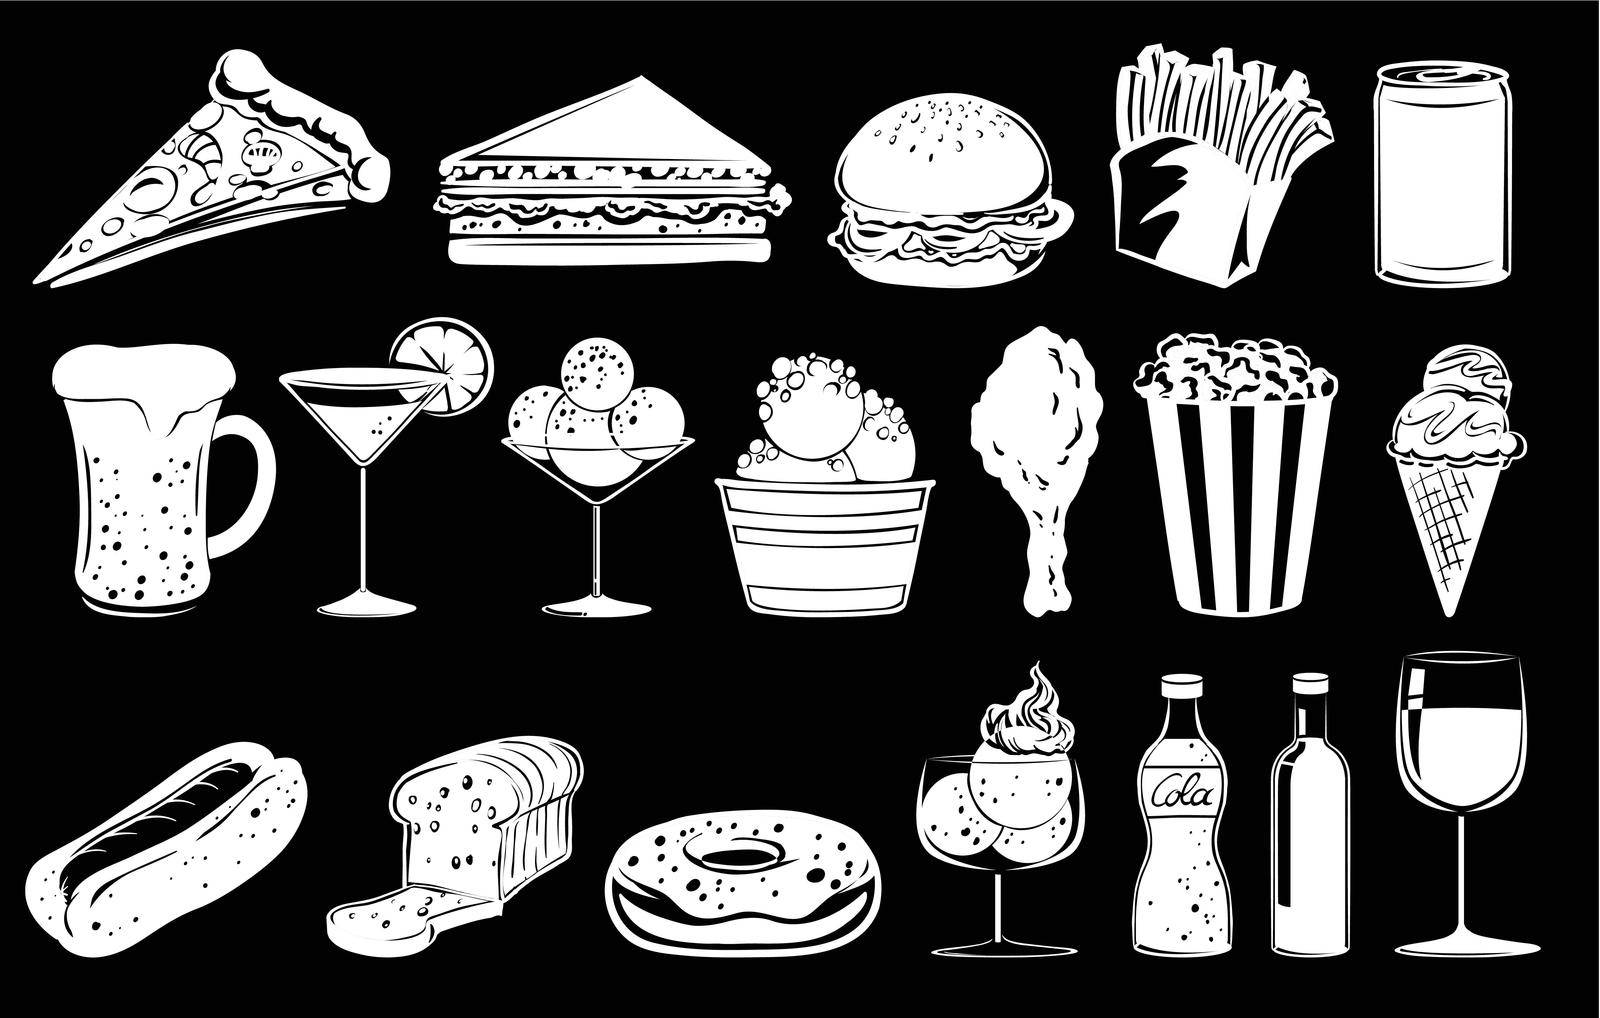 Doodle design of foods on a black background